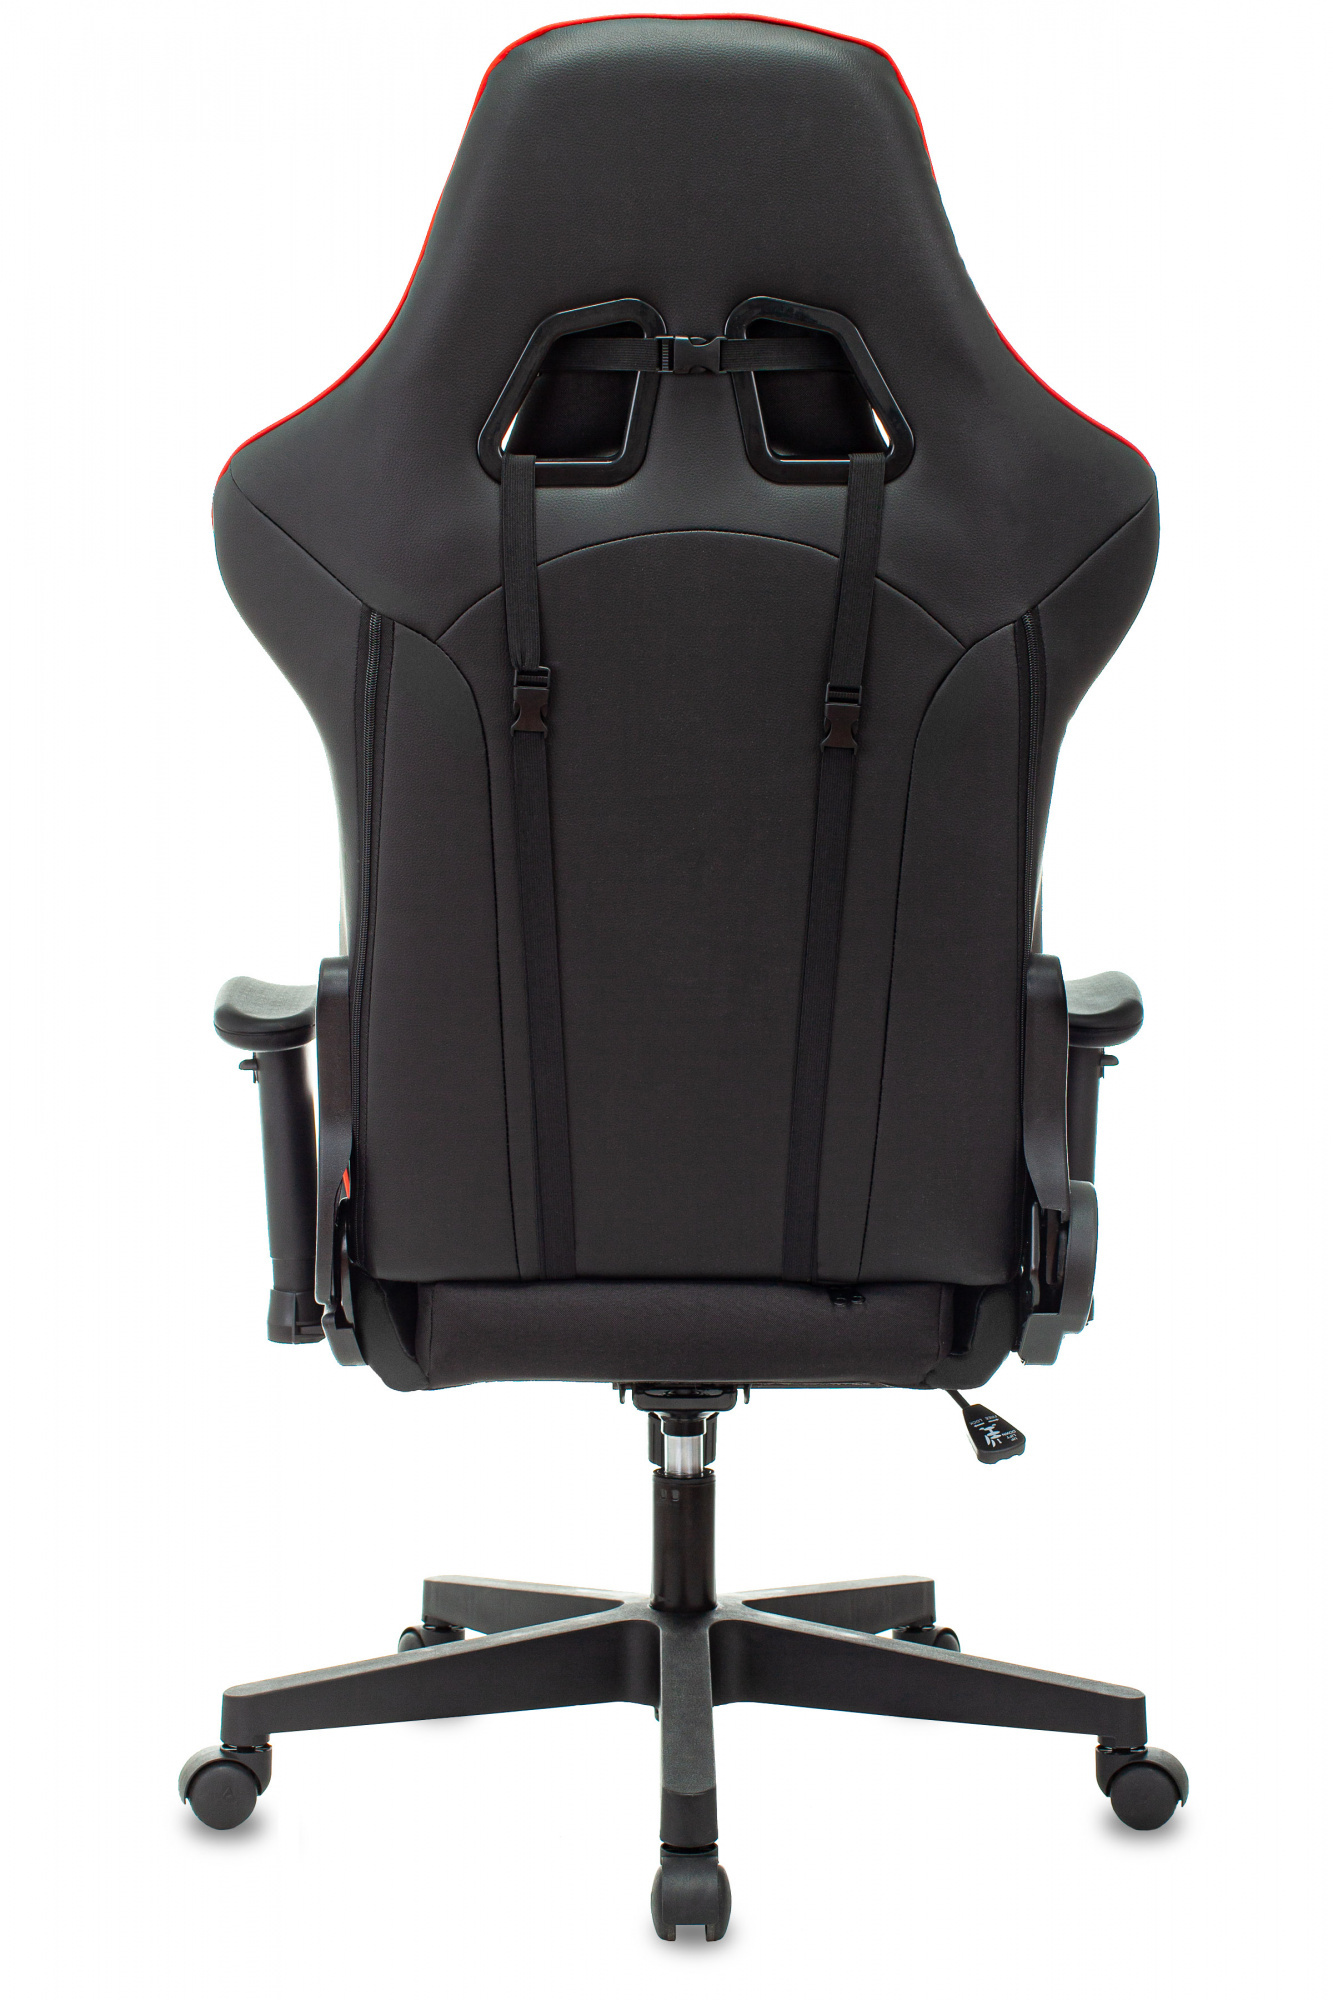 Кресло игровое Zombie Thunder 1, обивка: ткань/экокожа, цвет: черный/красный (ZOMBIE THUNDER 1 RD) от магазина Buro.store